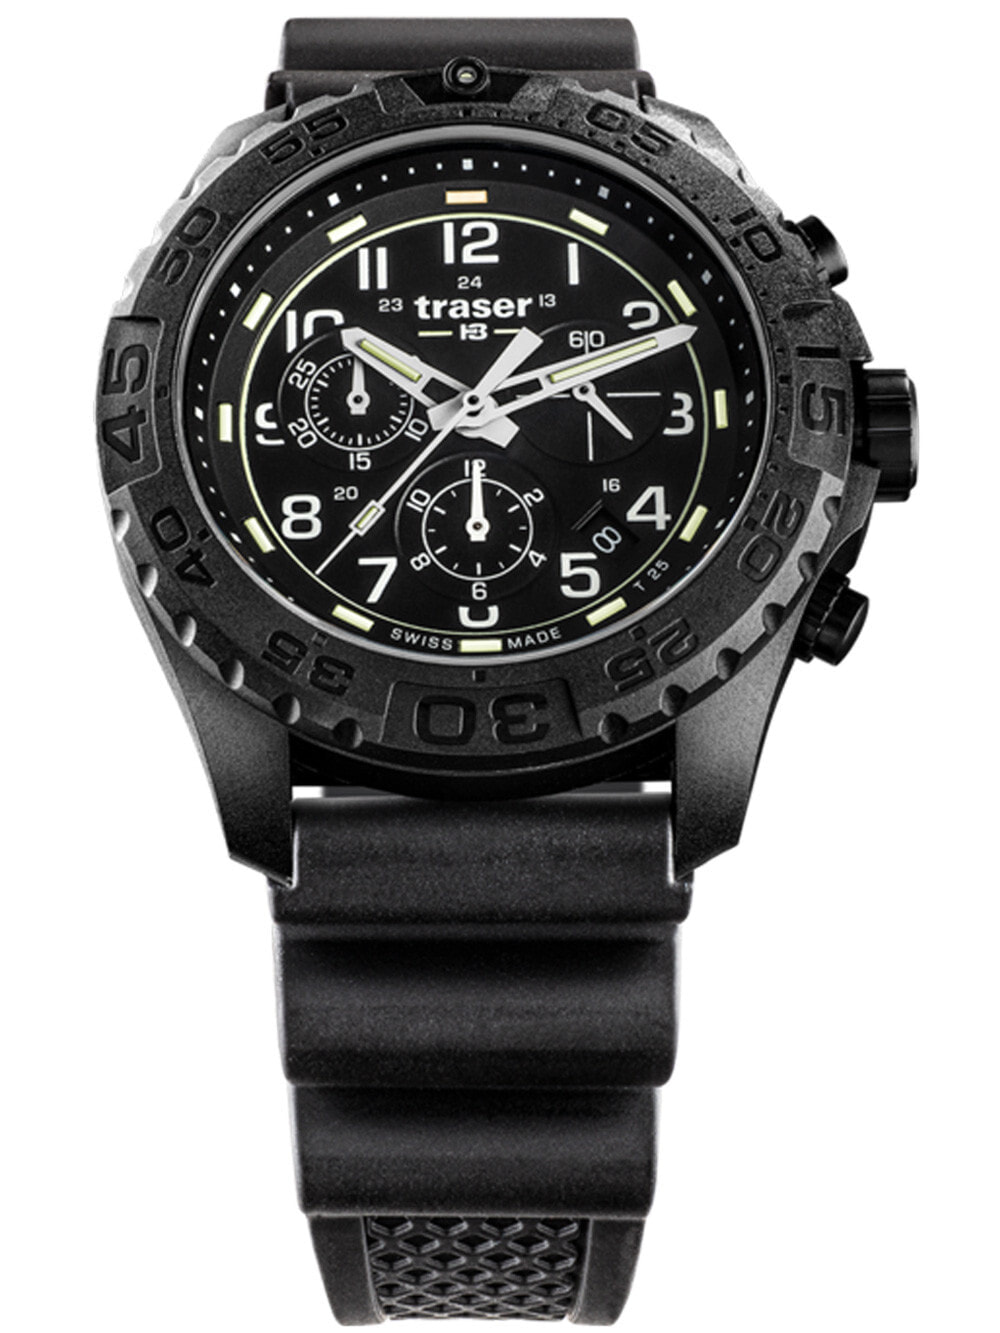 Мужские наручные часы с черным силиконовым ремешком Traser H3 108679 P96 OdP Evolution black Chronograph 44mm 20ATM